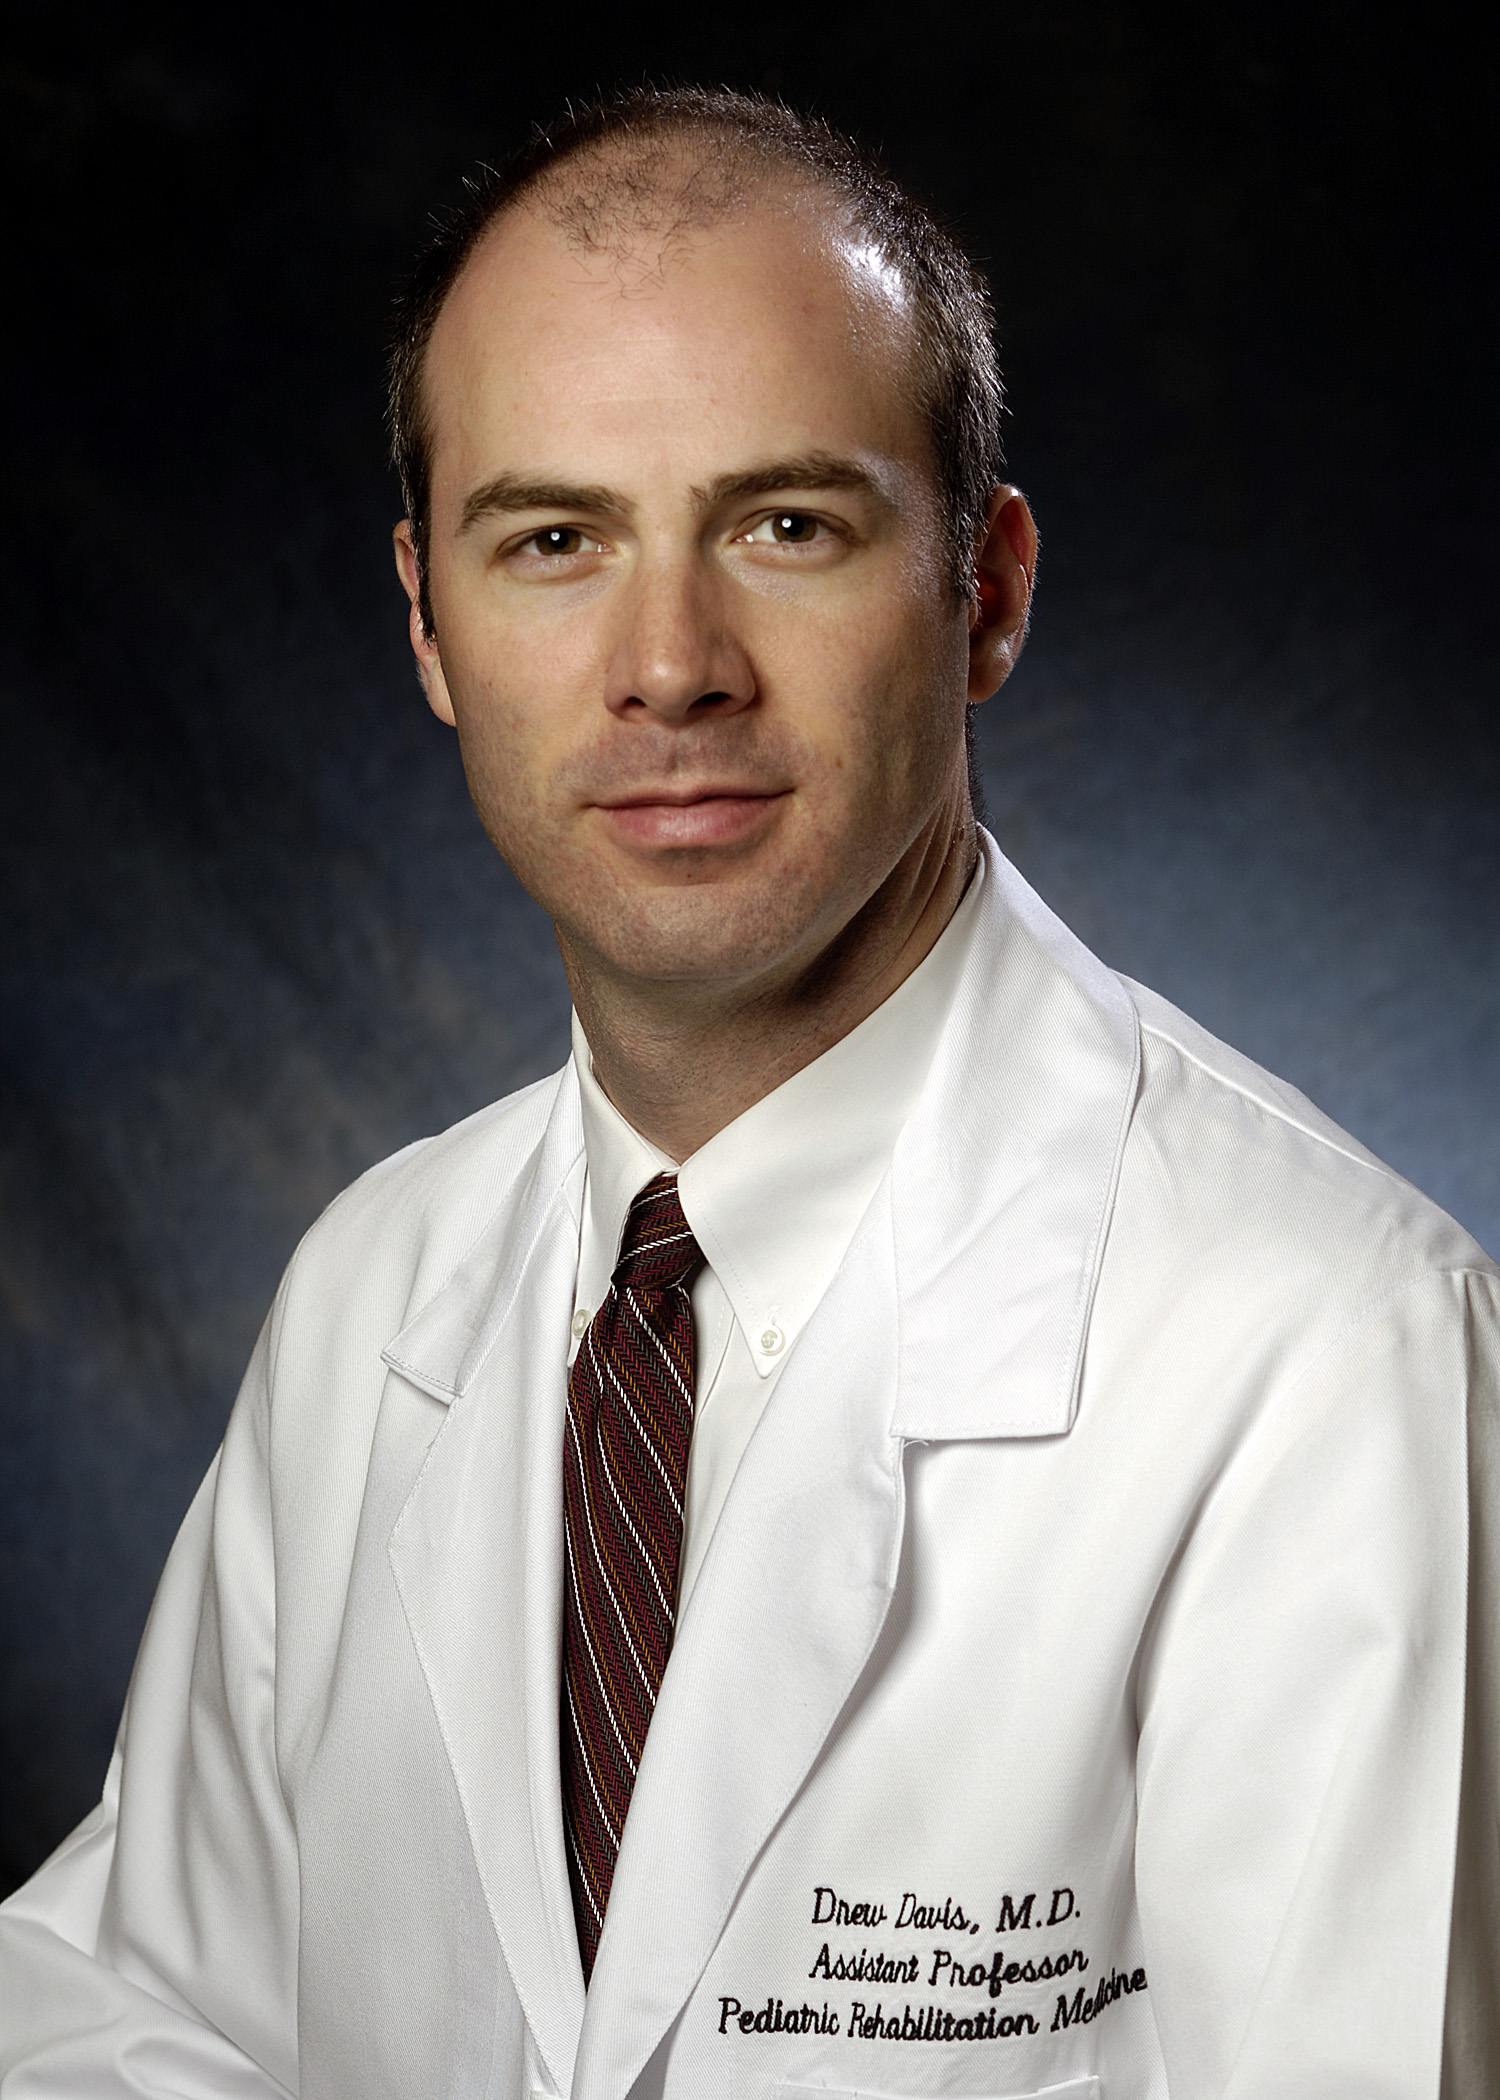 Dr. Drew Davis